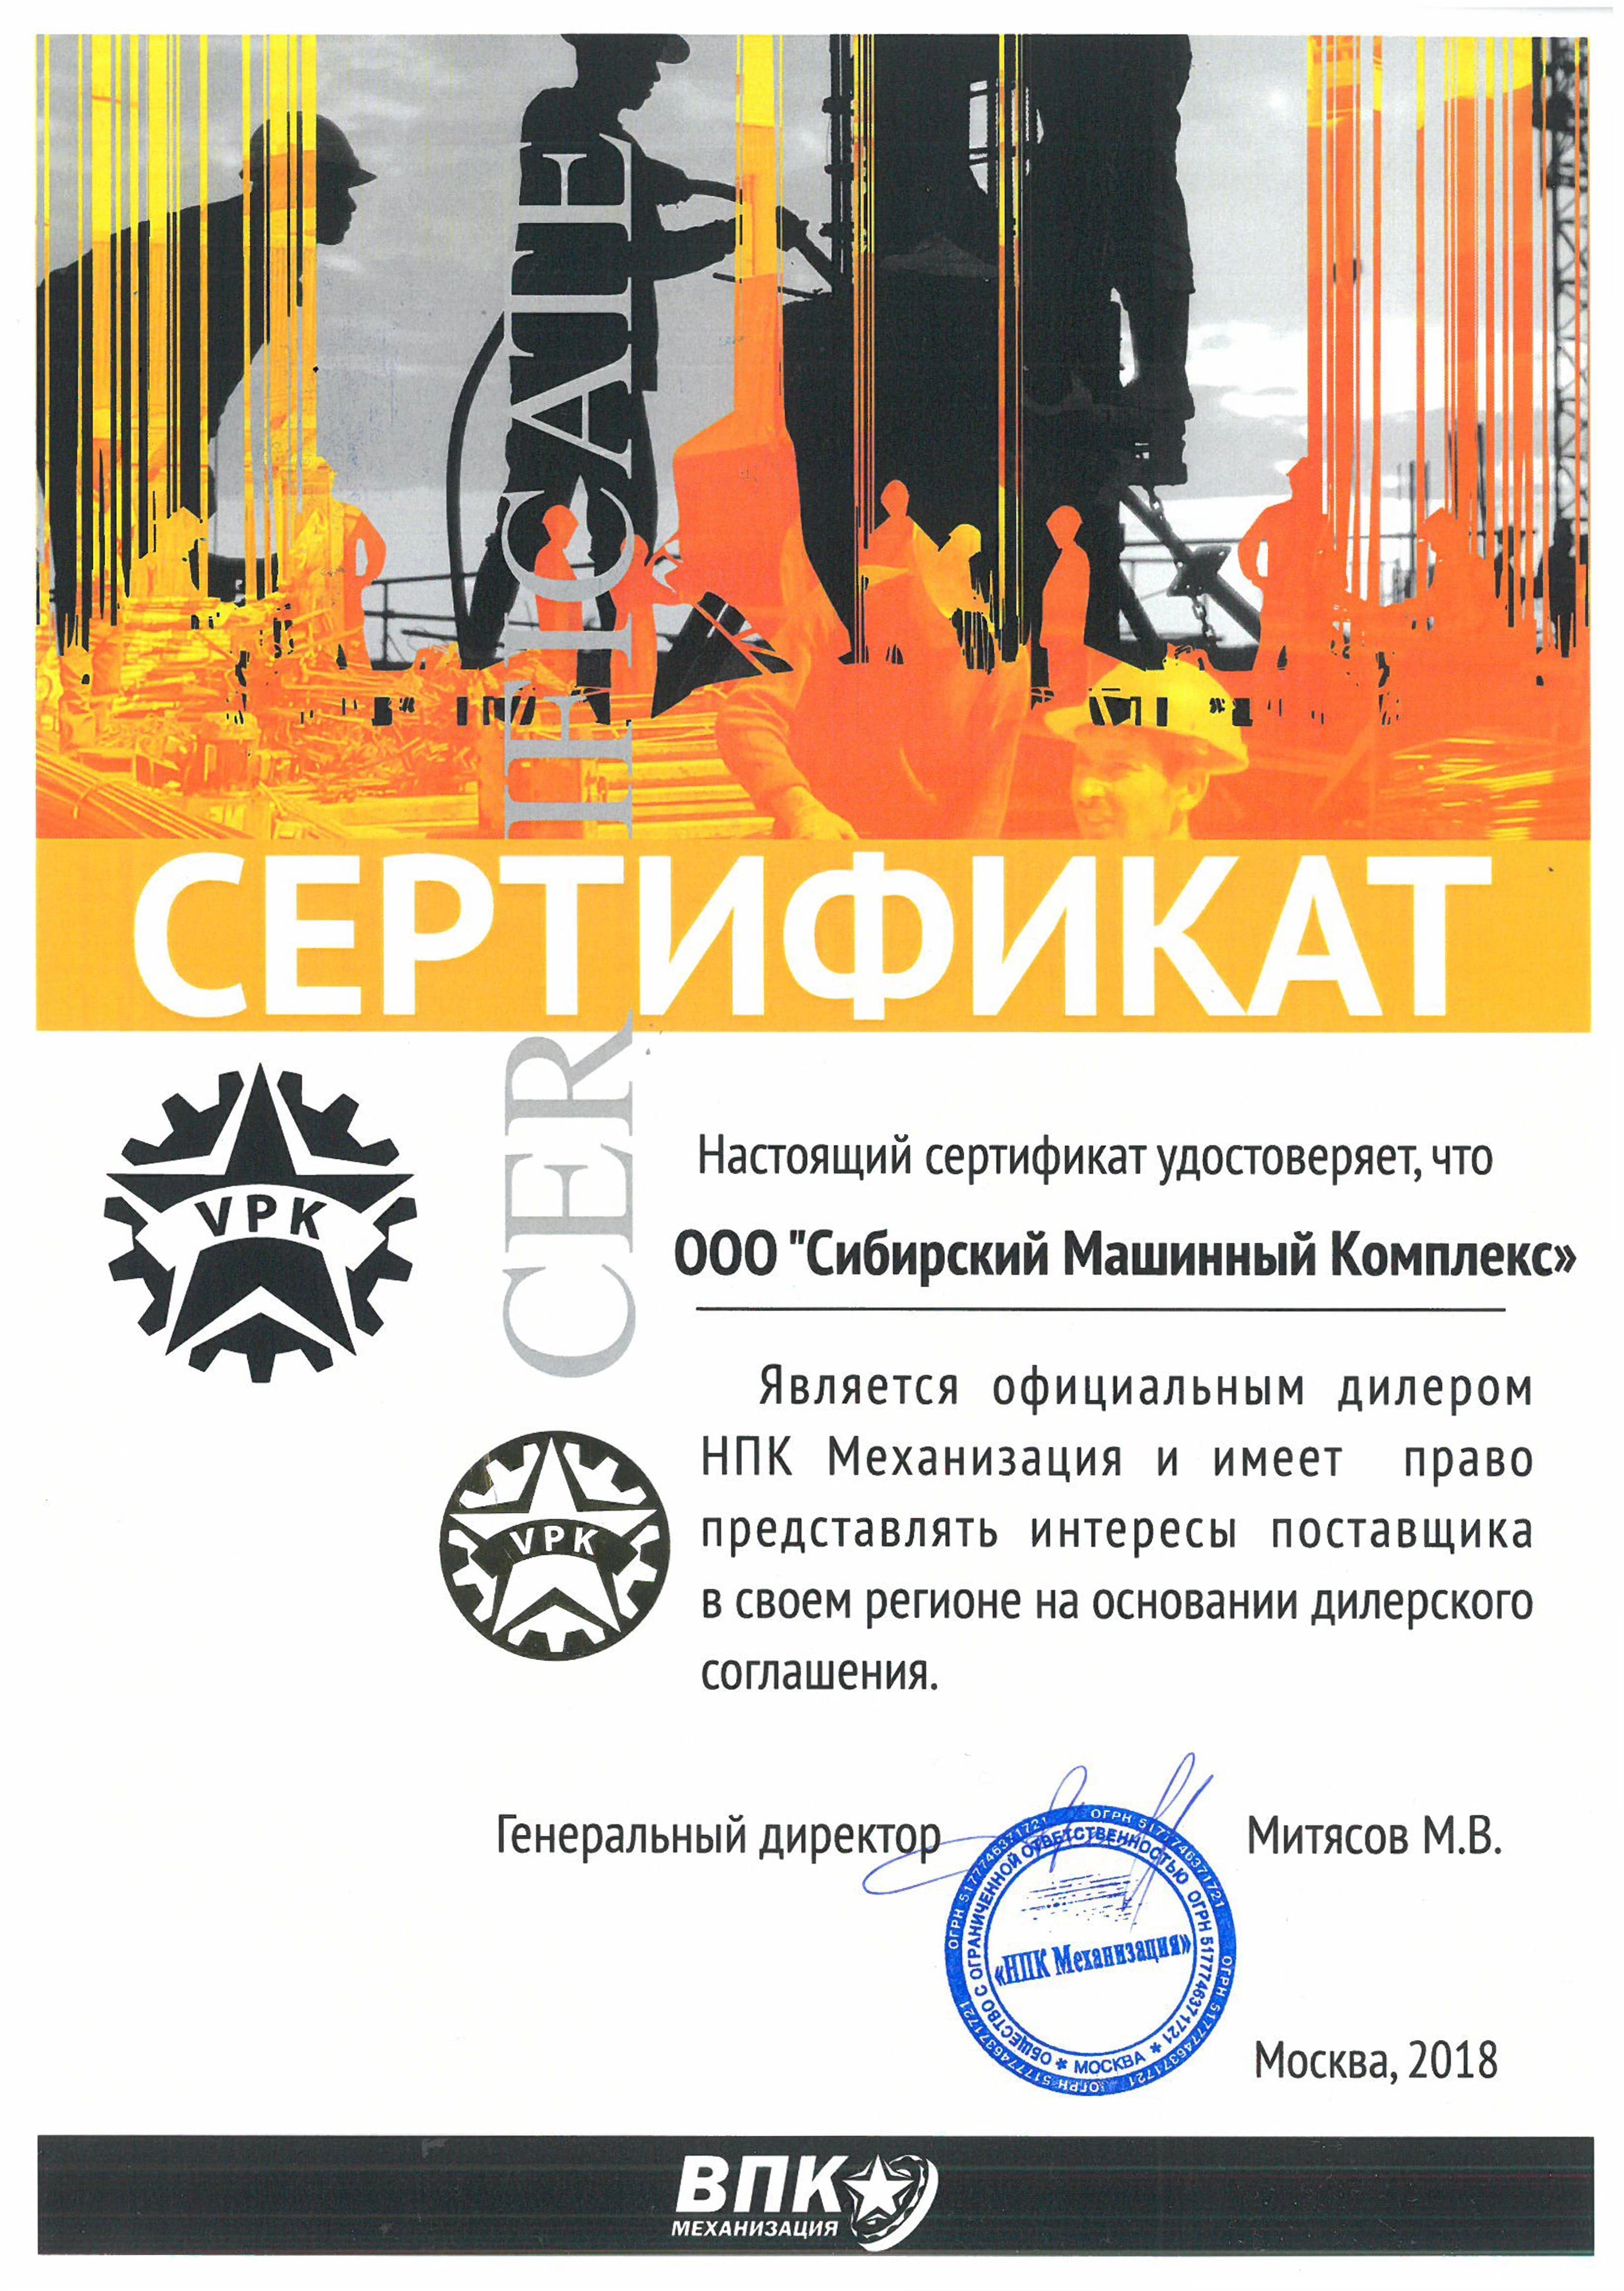 Сертификат дилерства ВПК Механизация – СМК г. Канск